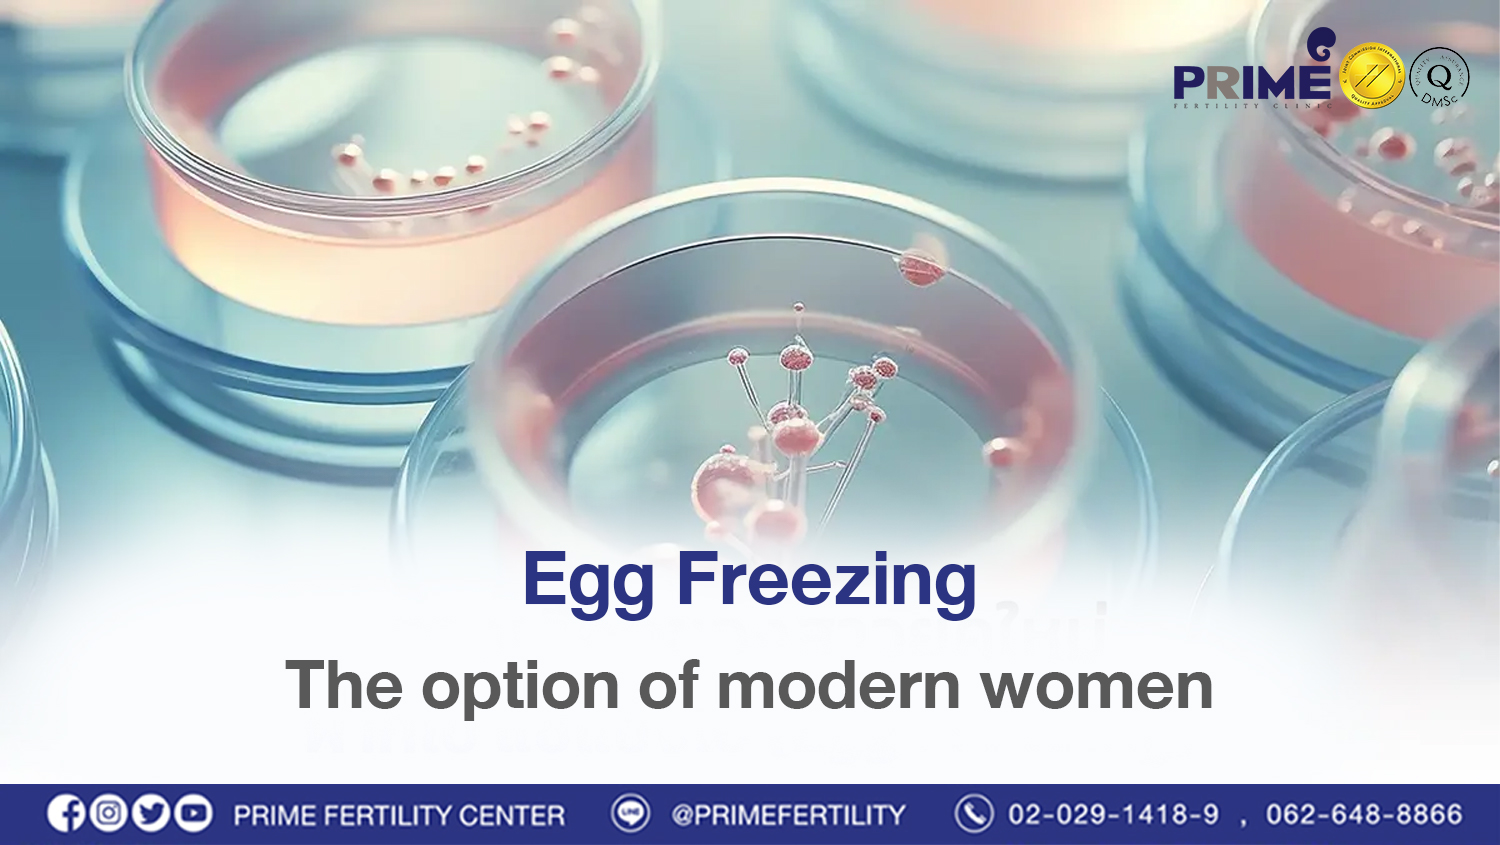 Egg Freezing, the option of modern women